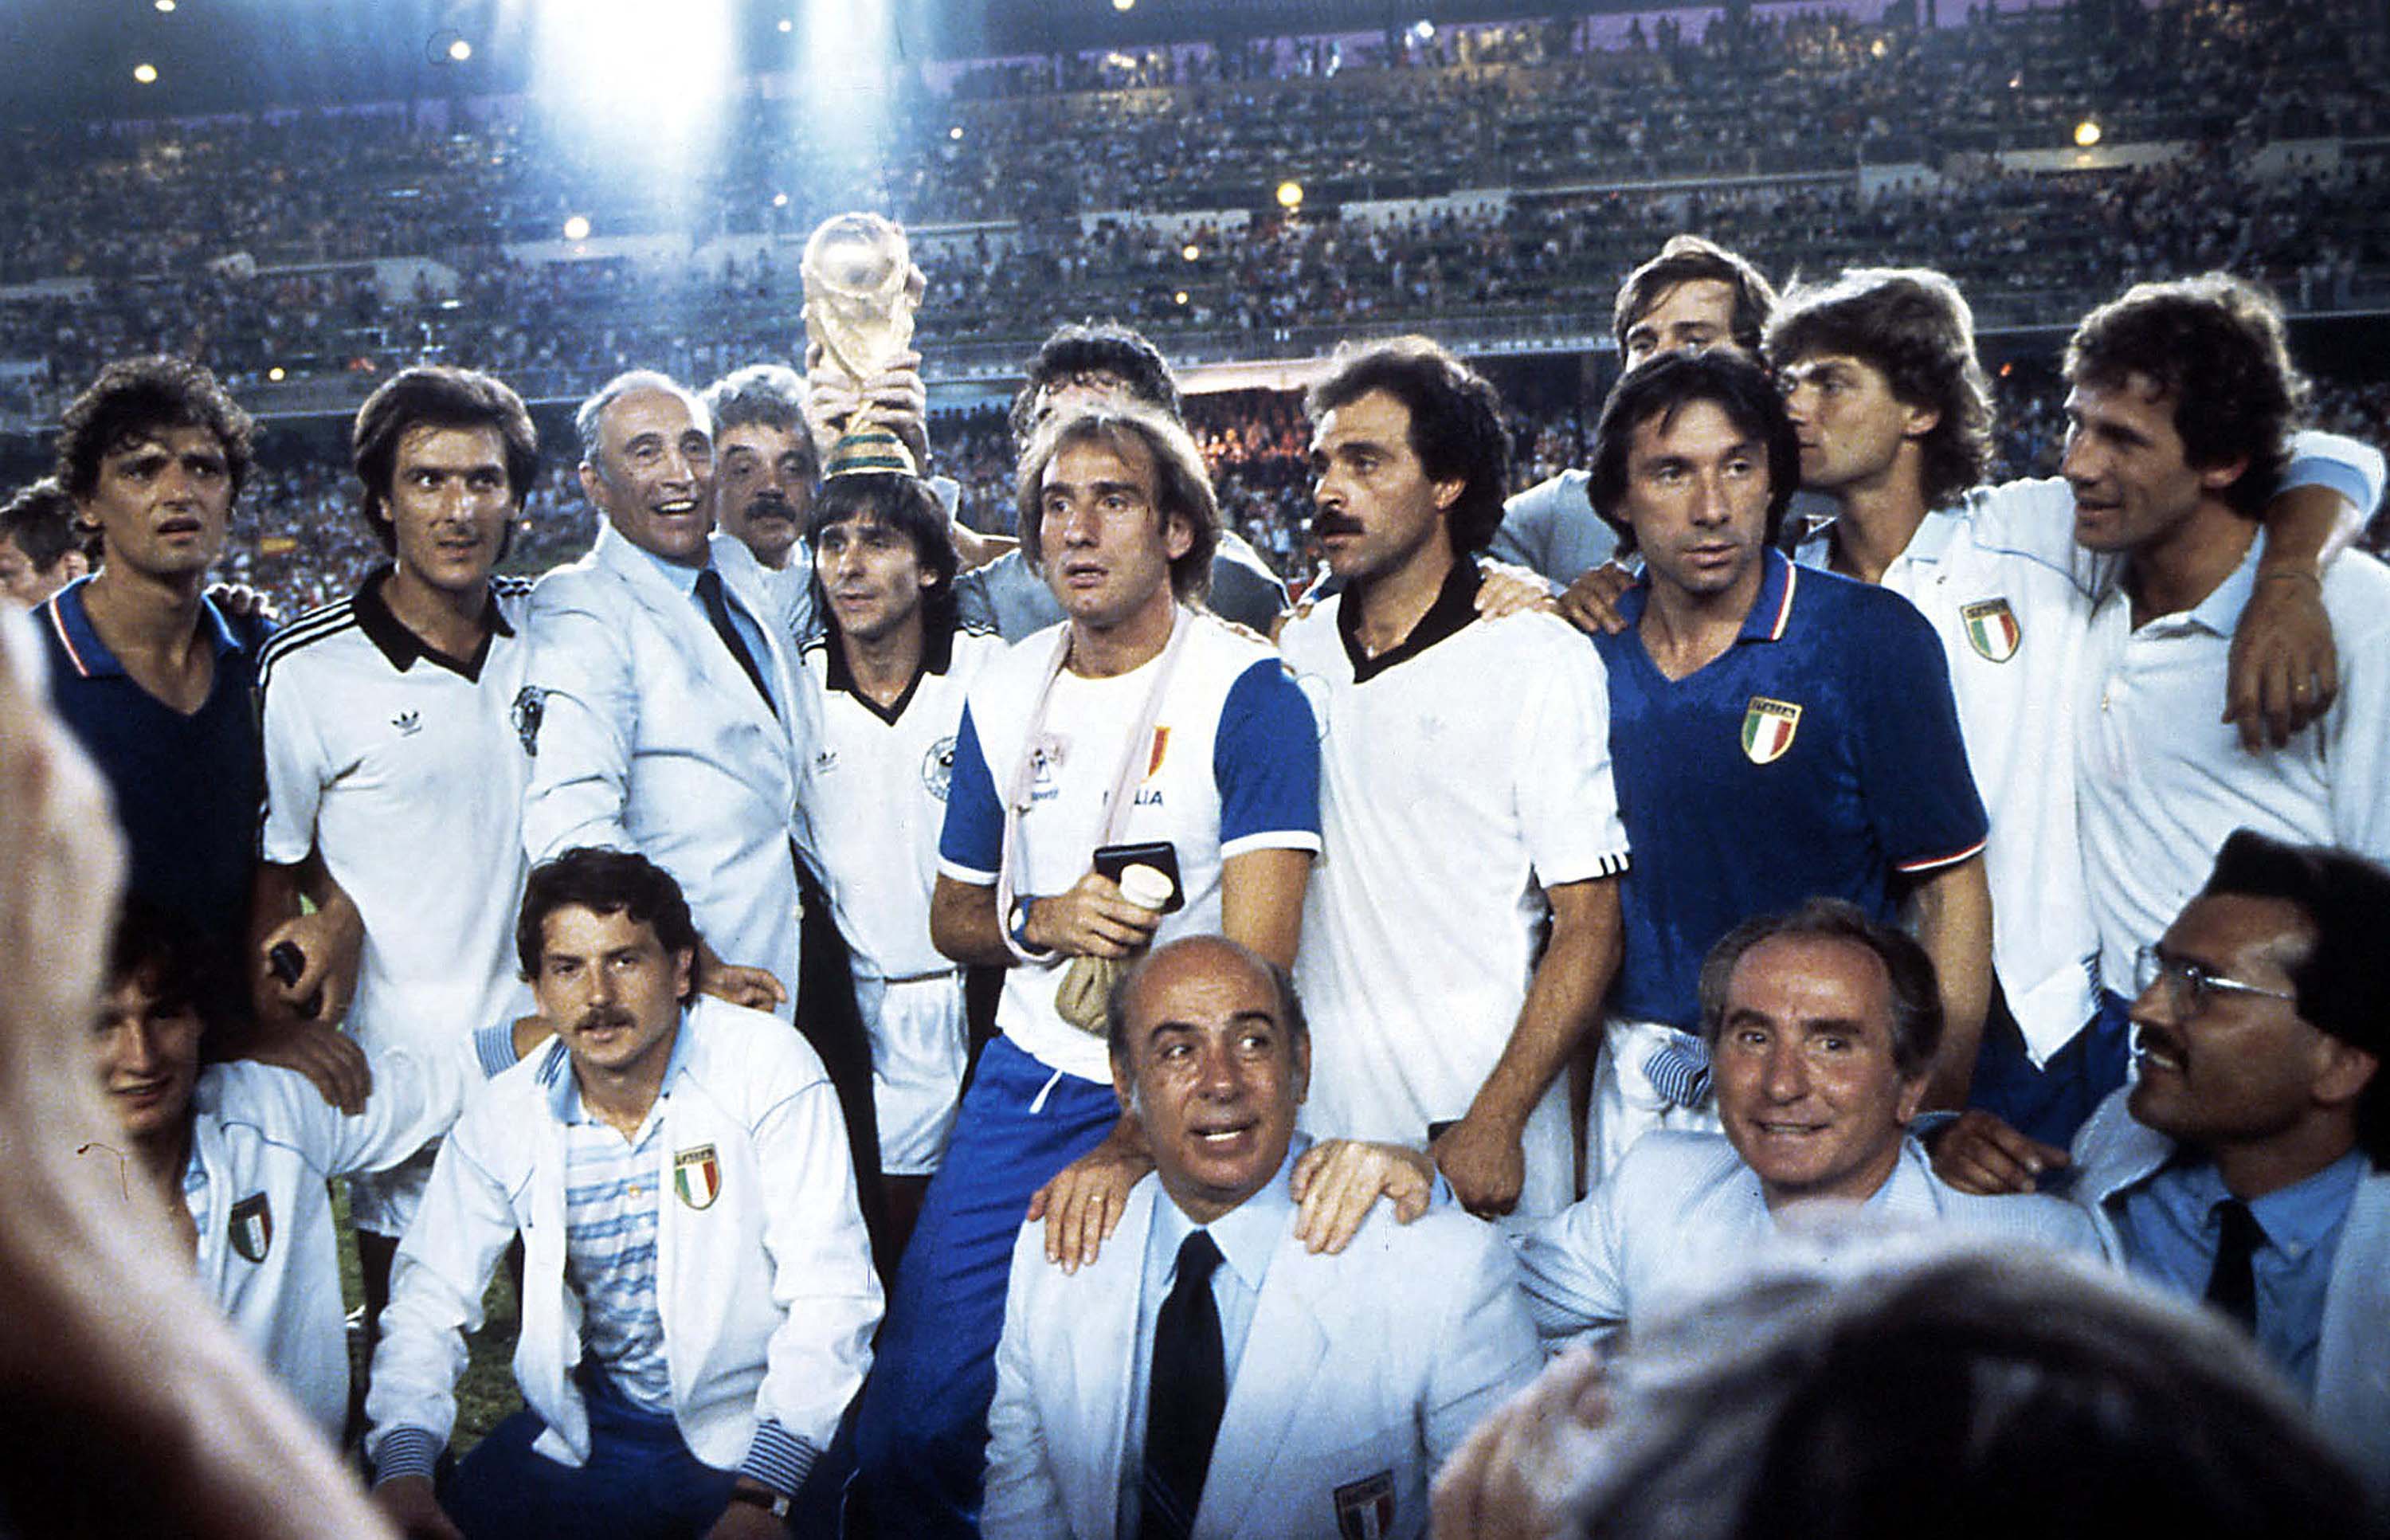 En un campeonato de menos a más, Italia conquistó el Mundial de 1982 celebrado en España. Un equipo dirigido por Enzo Bearzot, uno de los seleccionadores más recordads en su país (tercero a la izquierda de la imagen, en la fila de arriba). Alessandro Sabattini/Getty Images